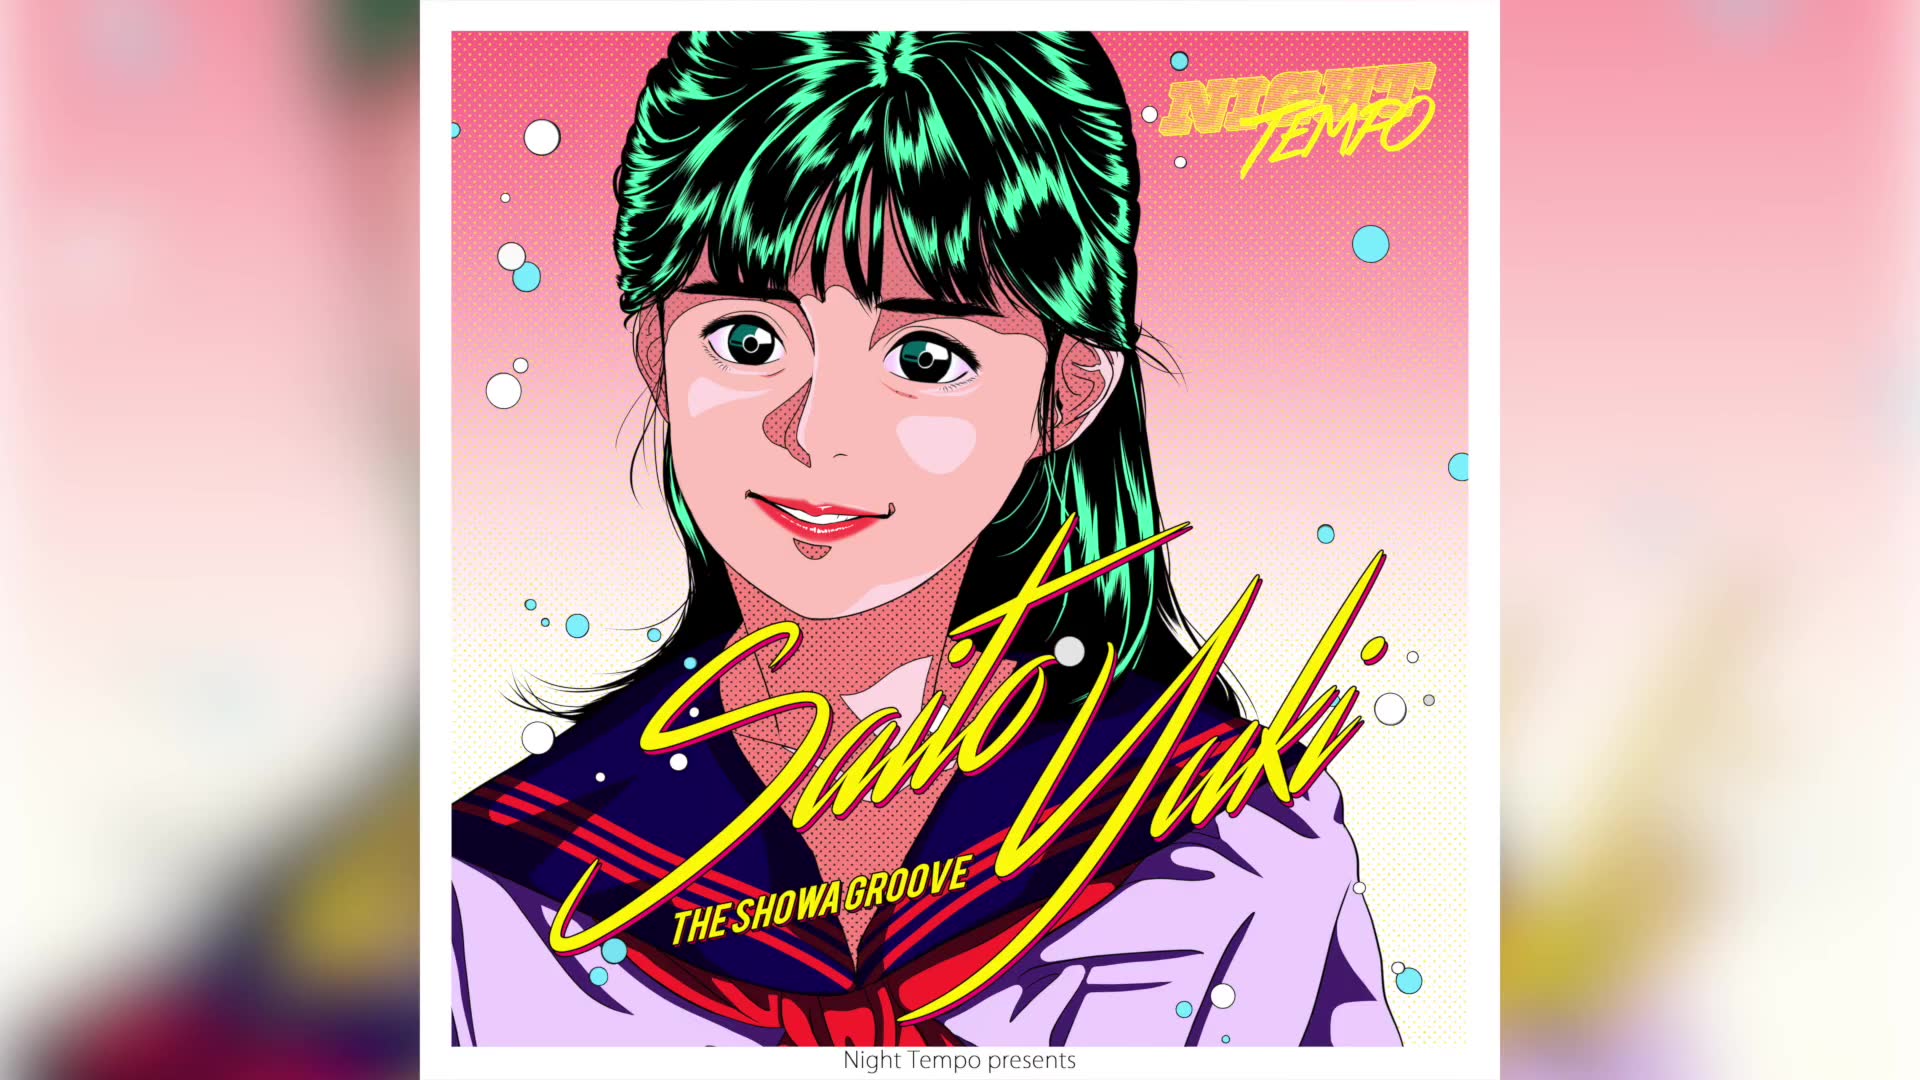 斉藤由貴 卒業 Night Tempo Showa Groove Mix Official Audio 哔哩哔哩 つロ 干杯 Bilibili